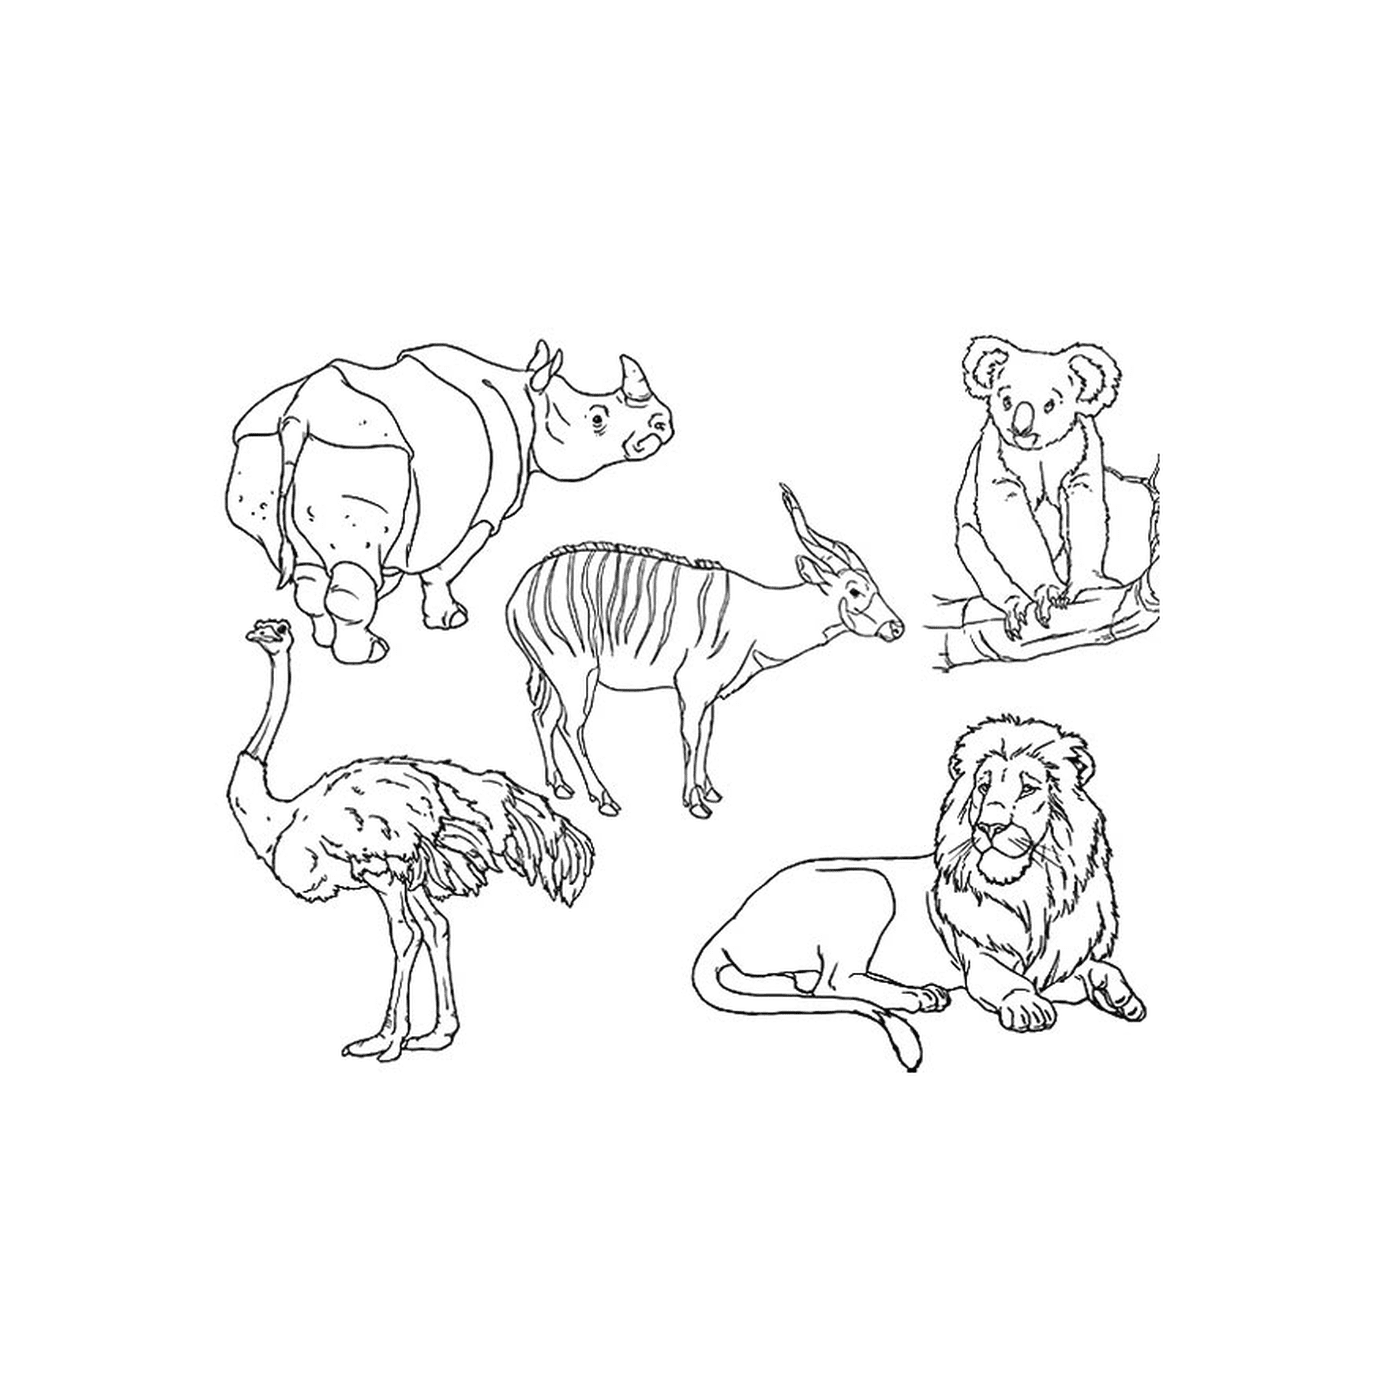  Um grupo de animais desenhados 